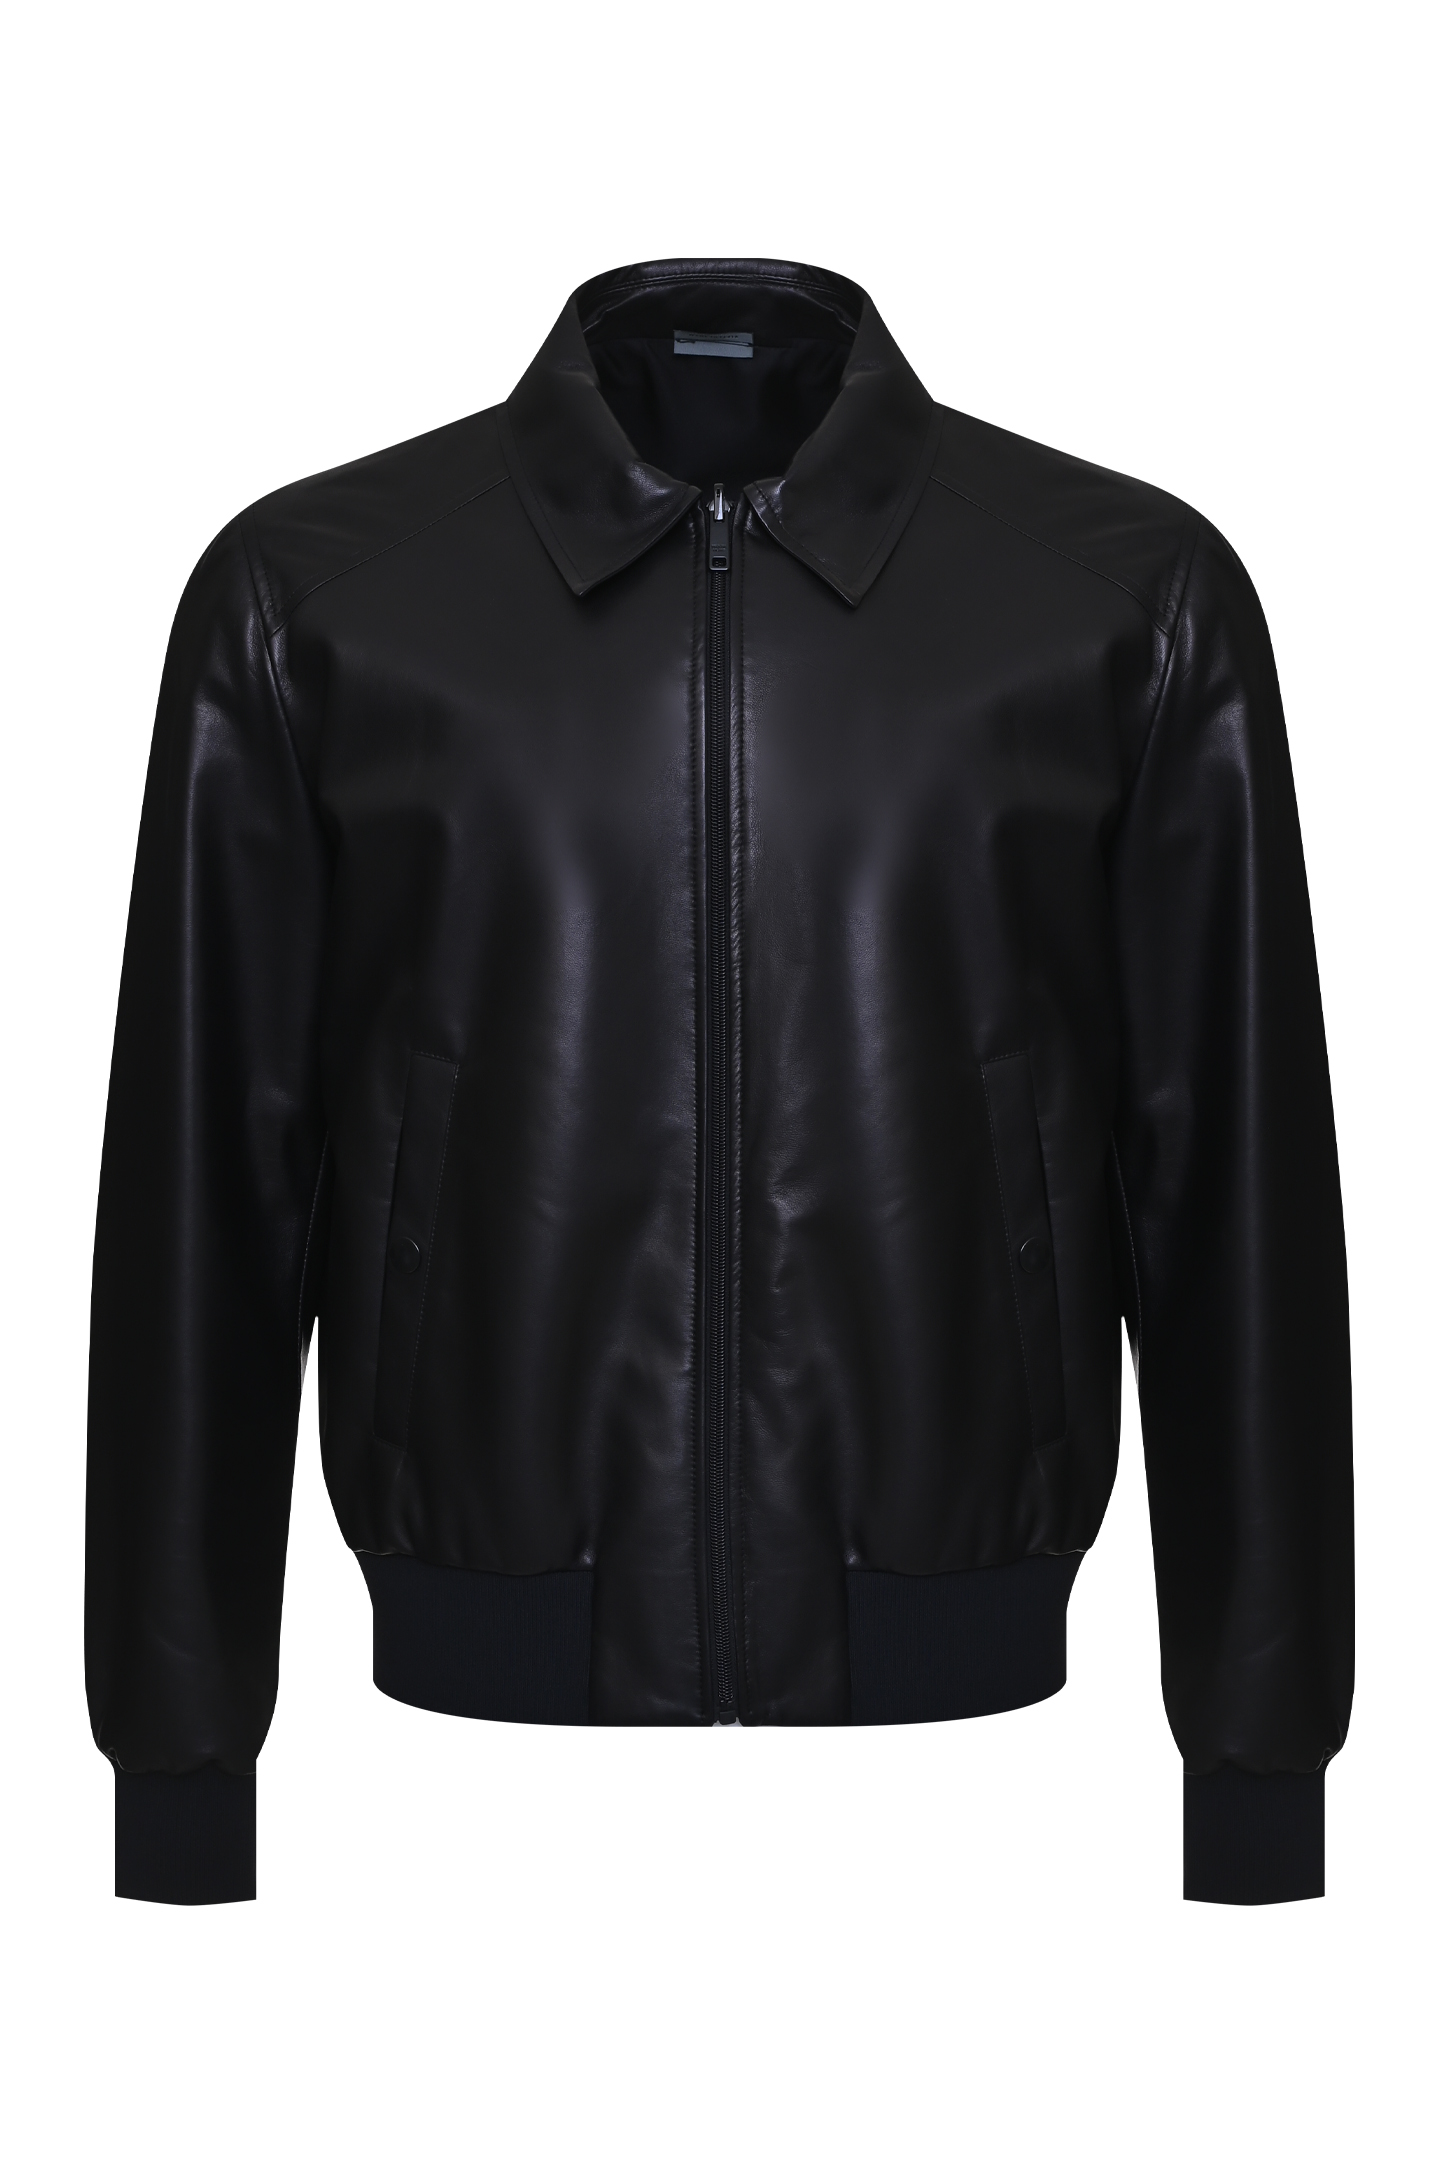 Куртка PRADA UPW284, цвет: Черный, Мужской